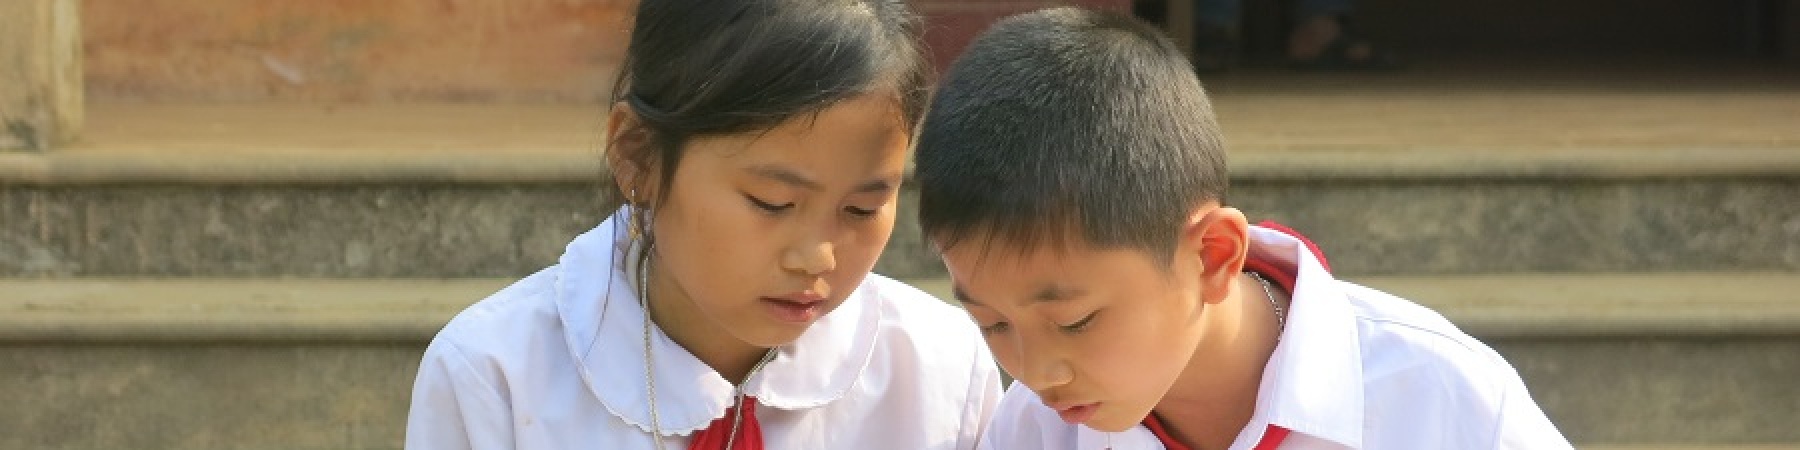 Bambini con camicia bianca e cravattina rossa seduti su un muretto leggono un libro interessati